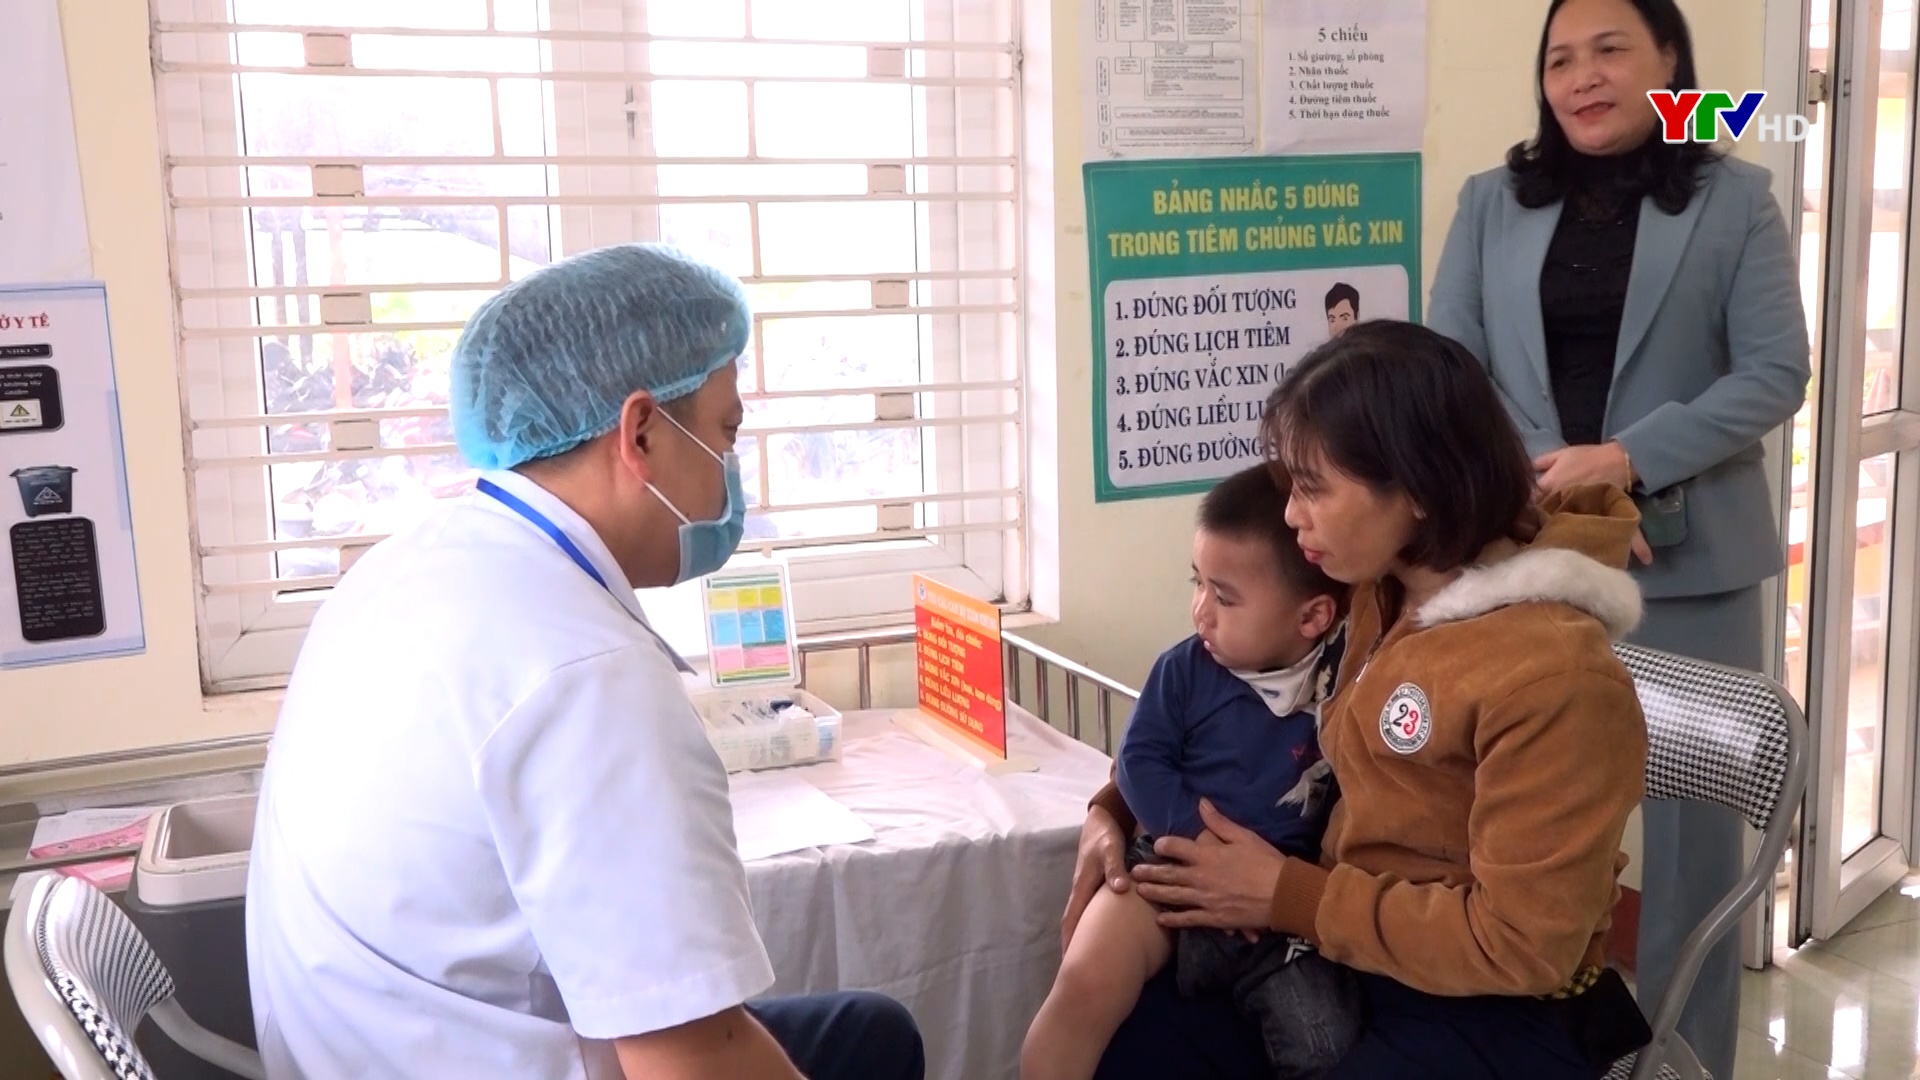 Yên Bái: Tỷ lệ tiêm chủng đạt yêu cầu của Bộ Y tế